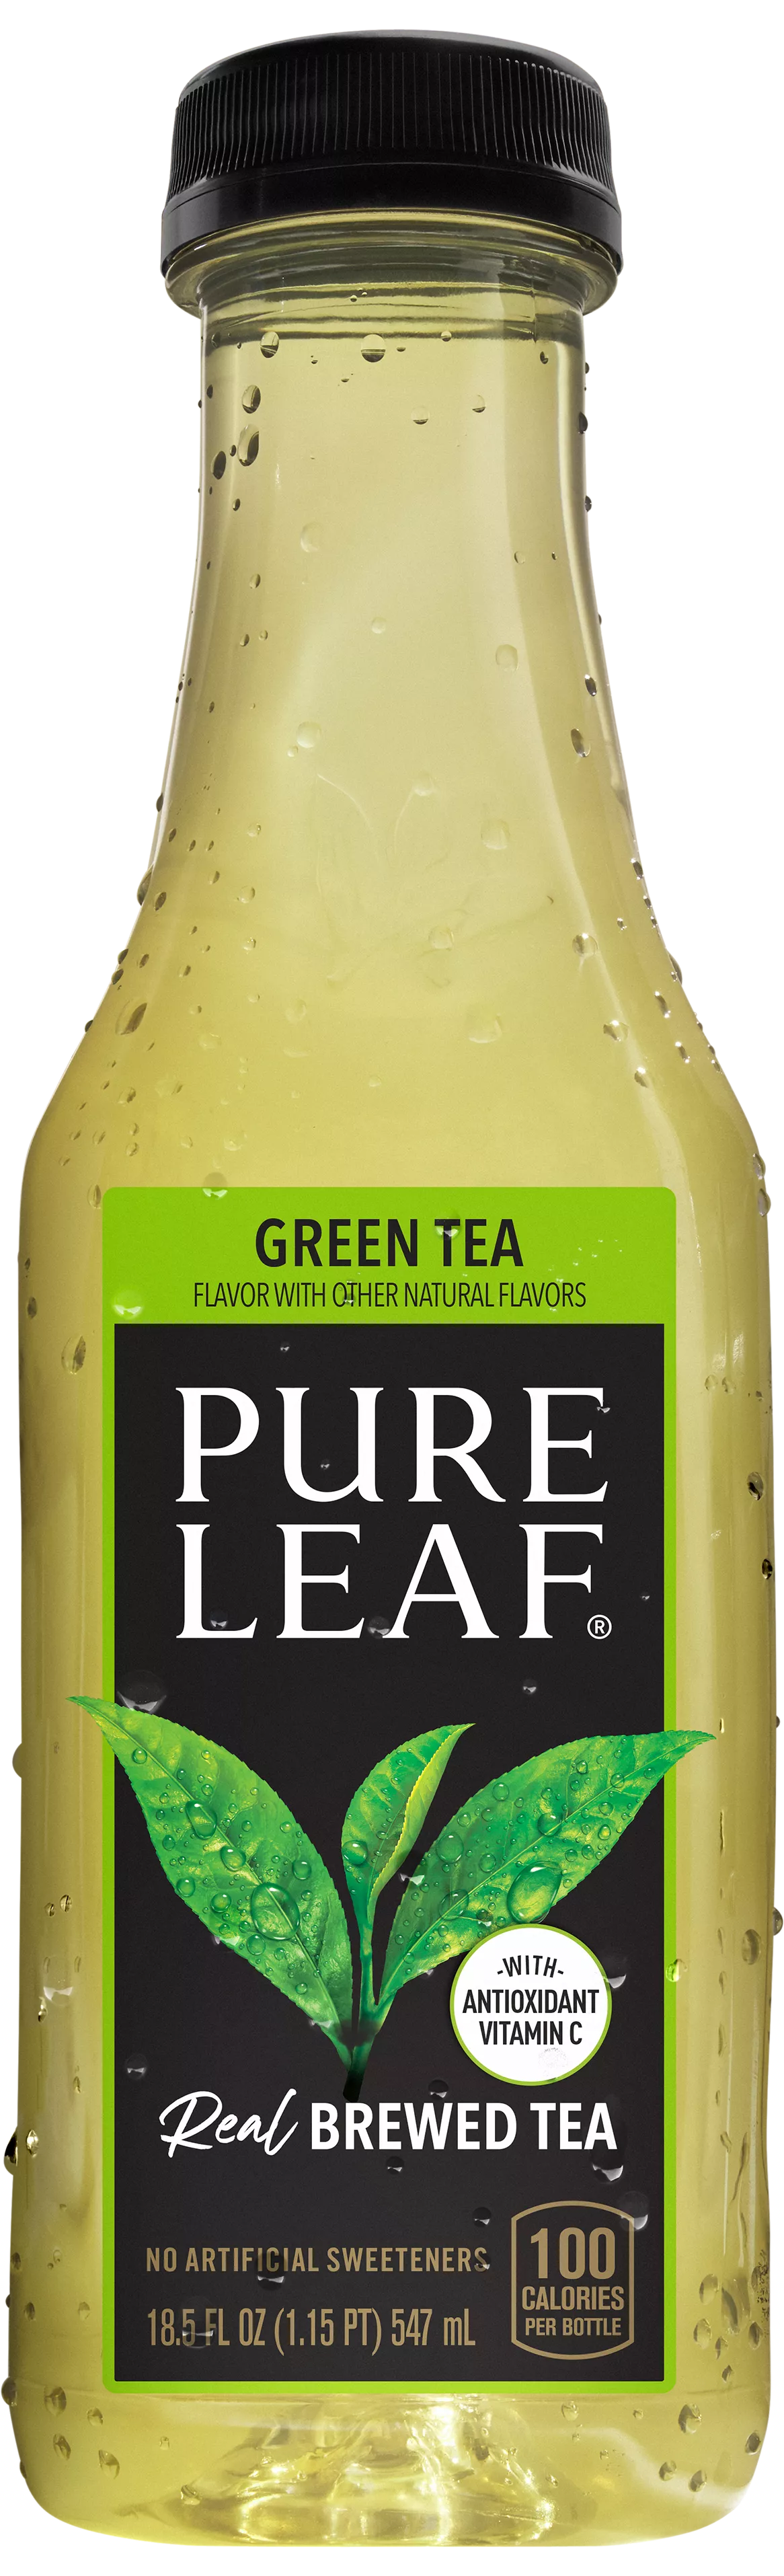 Pure Leaf Sweet Tea Real Brewed Tea, 18.5 fl oz